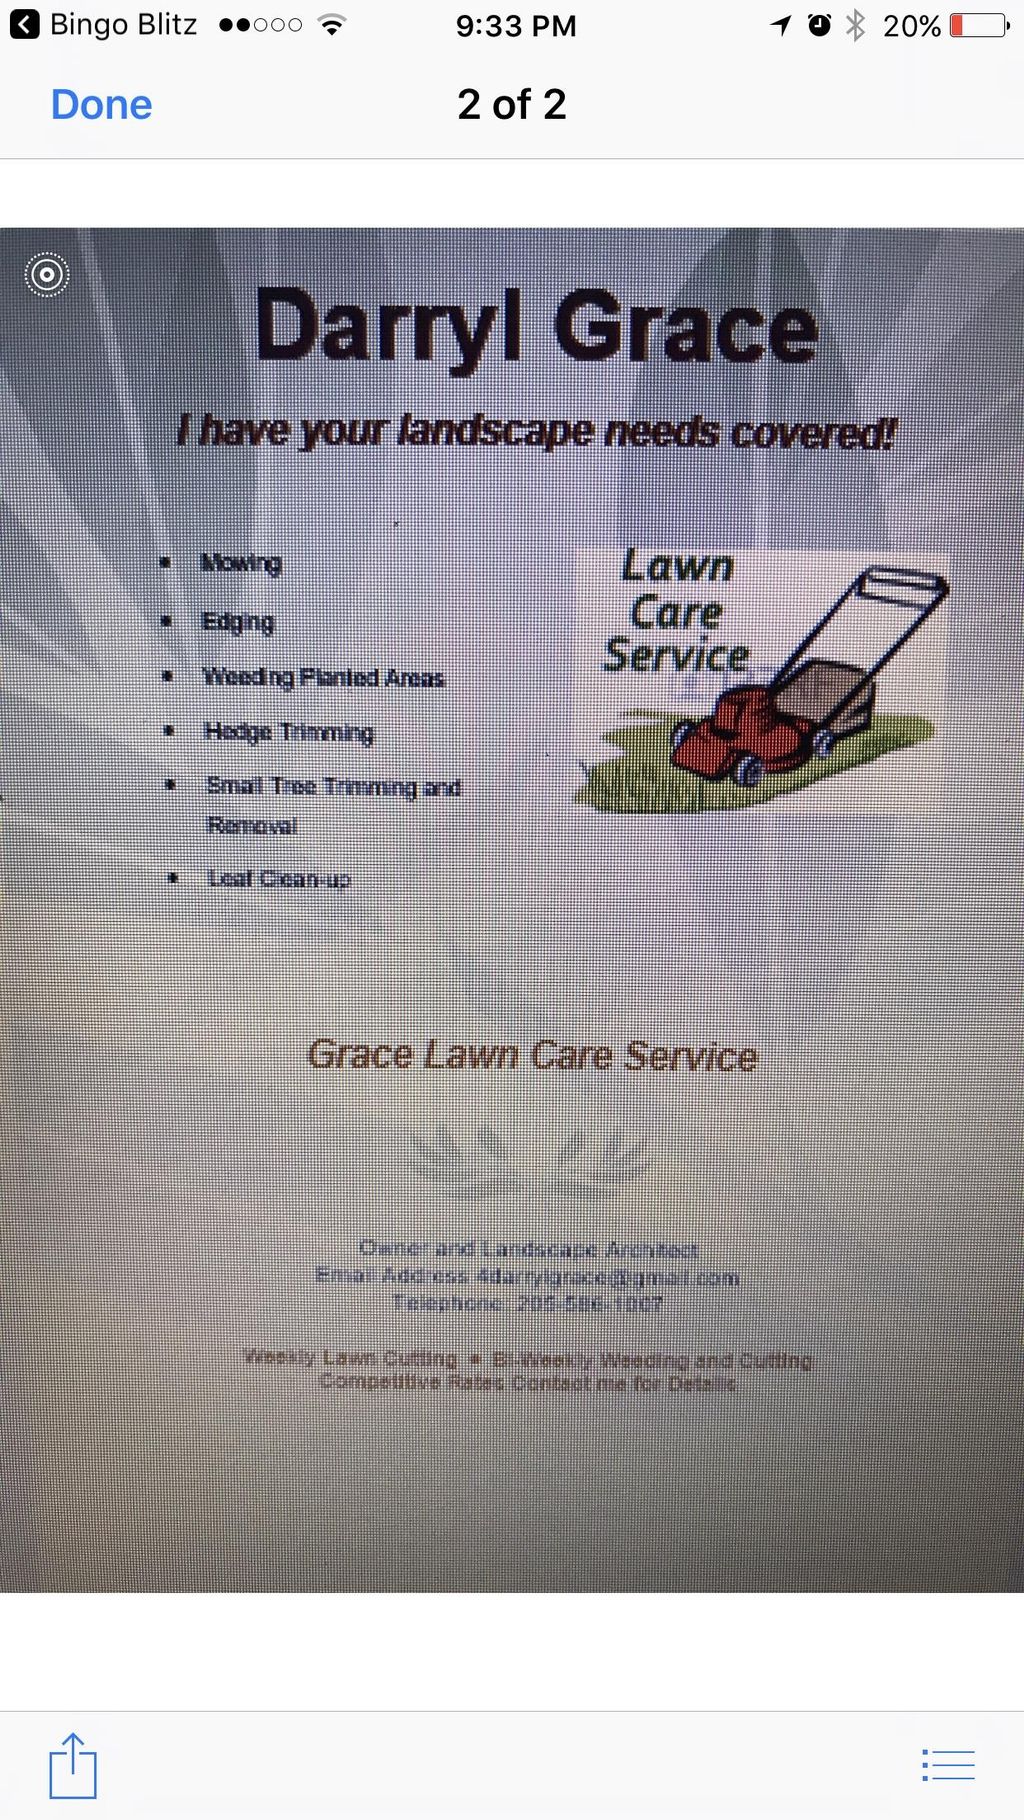 Grace's lawn service